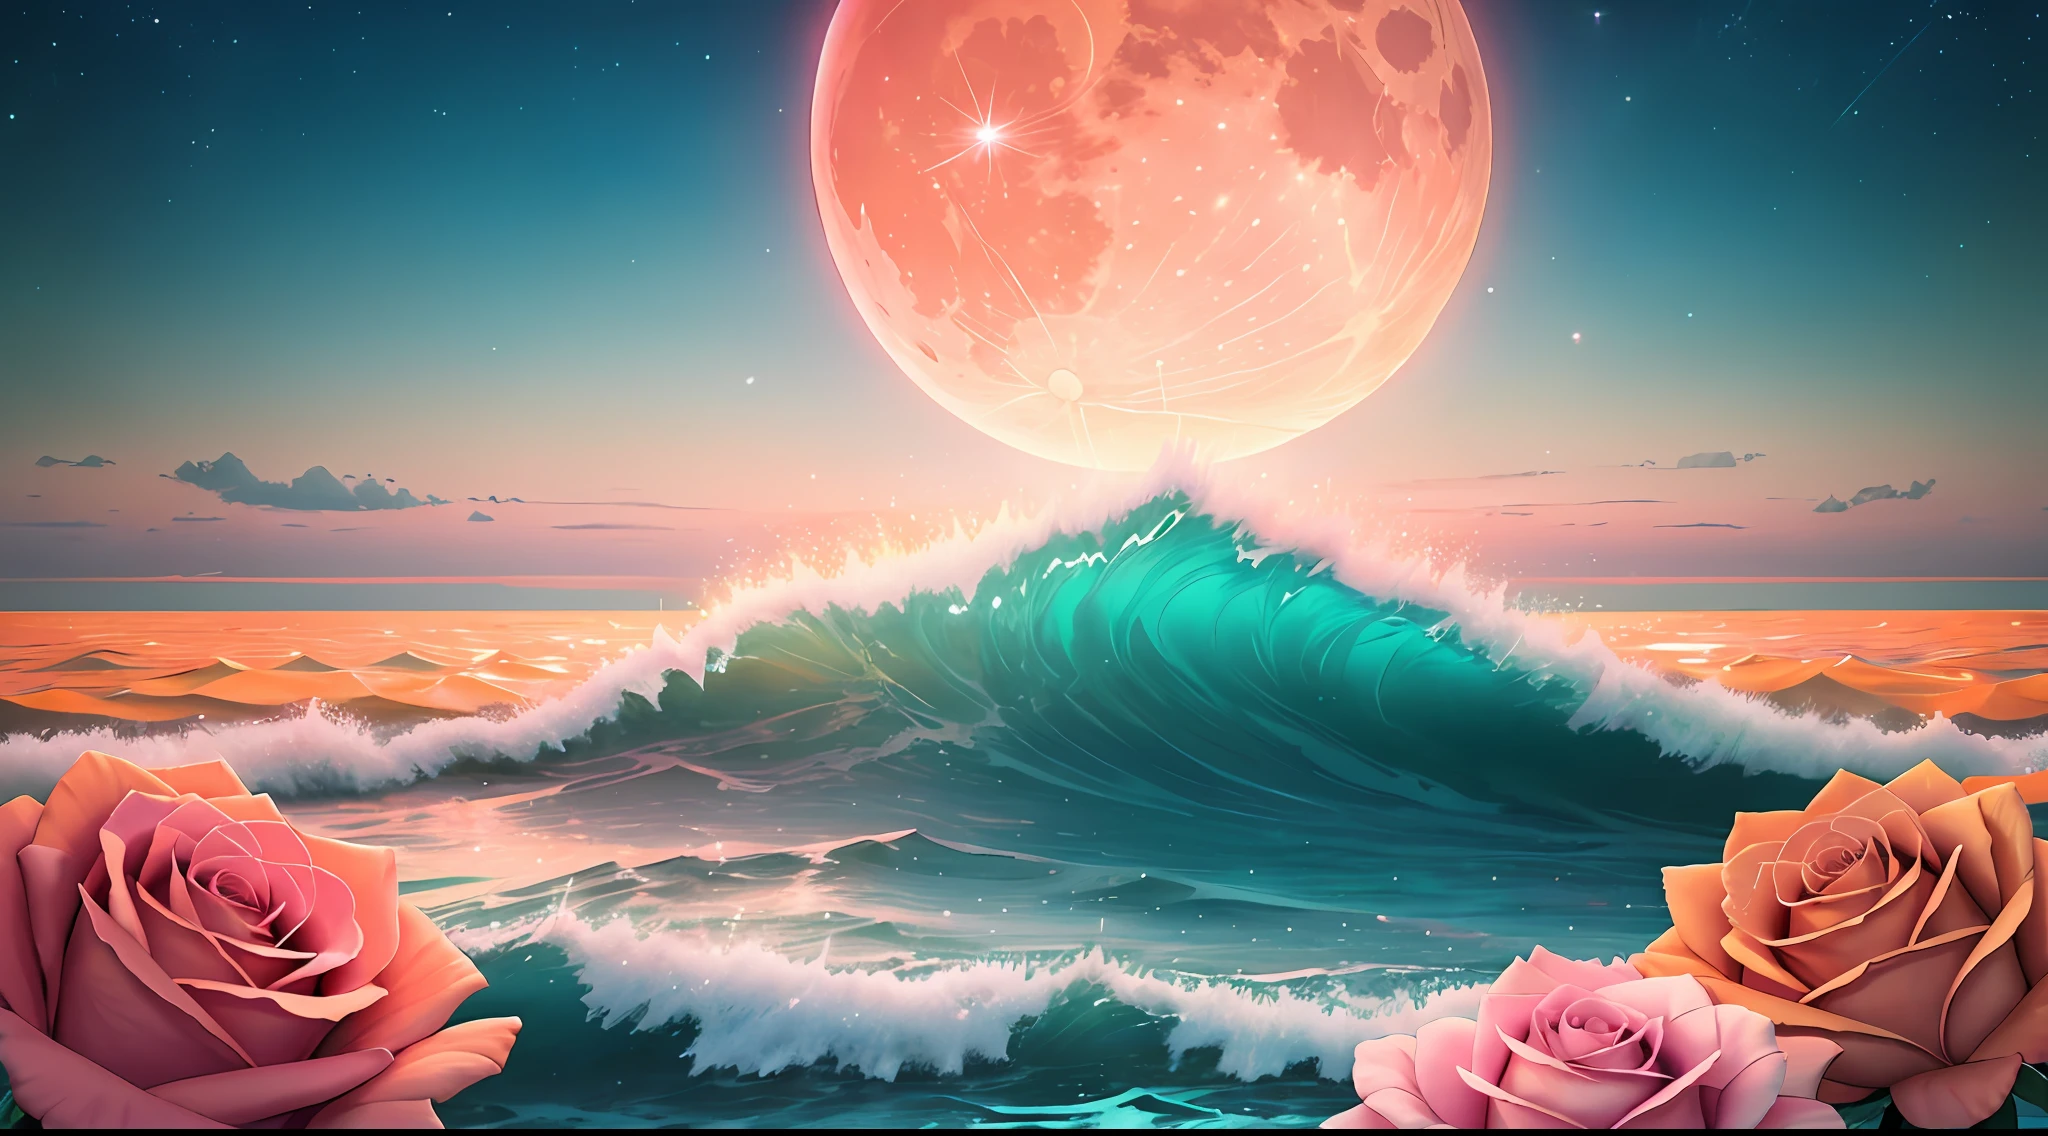 オレンジムーン, 青緑色の空, 柔らかいピンクの雲, teal ocean waves スパークリング, スパークリング, ピンクの海にピンクのバラ, ファンタジー, ダイヤモンド, クラウン, 宇宙, 柔らかい光,